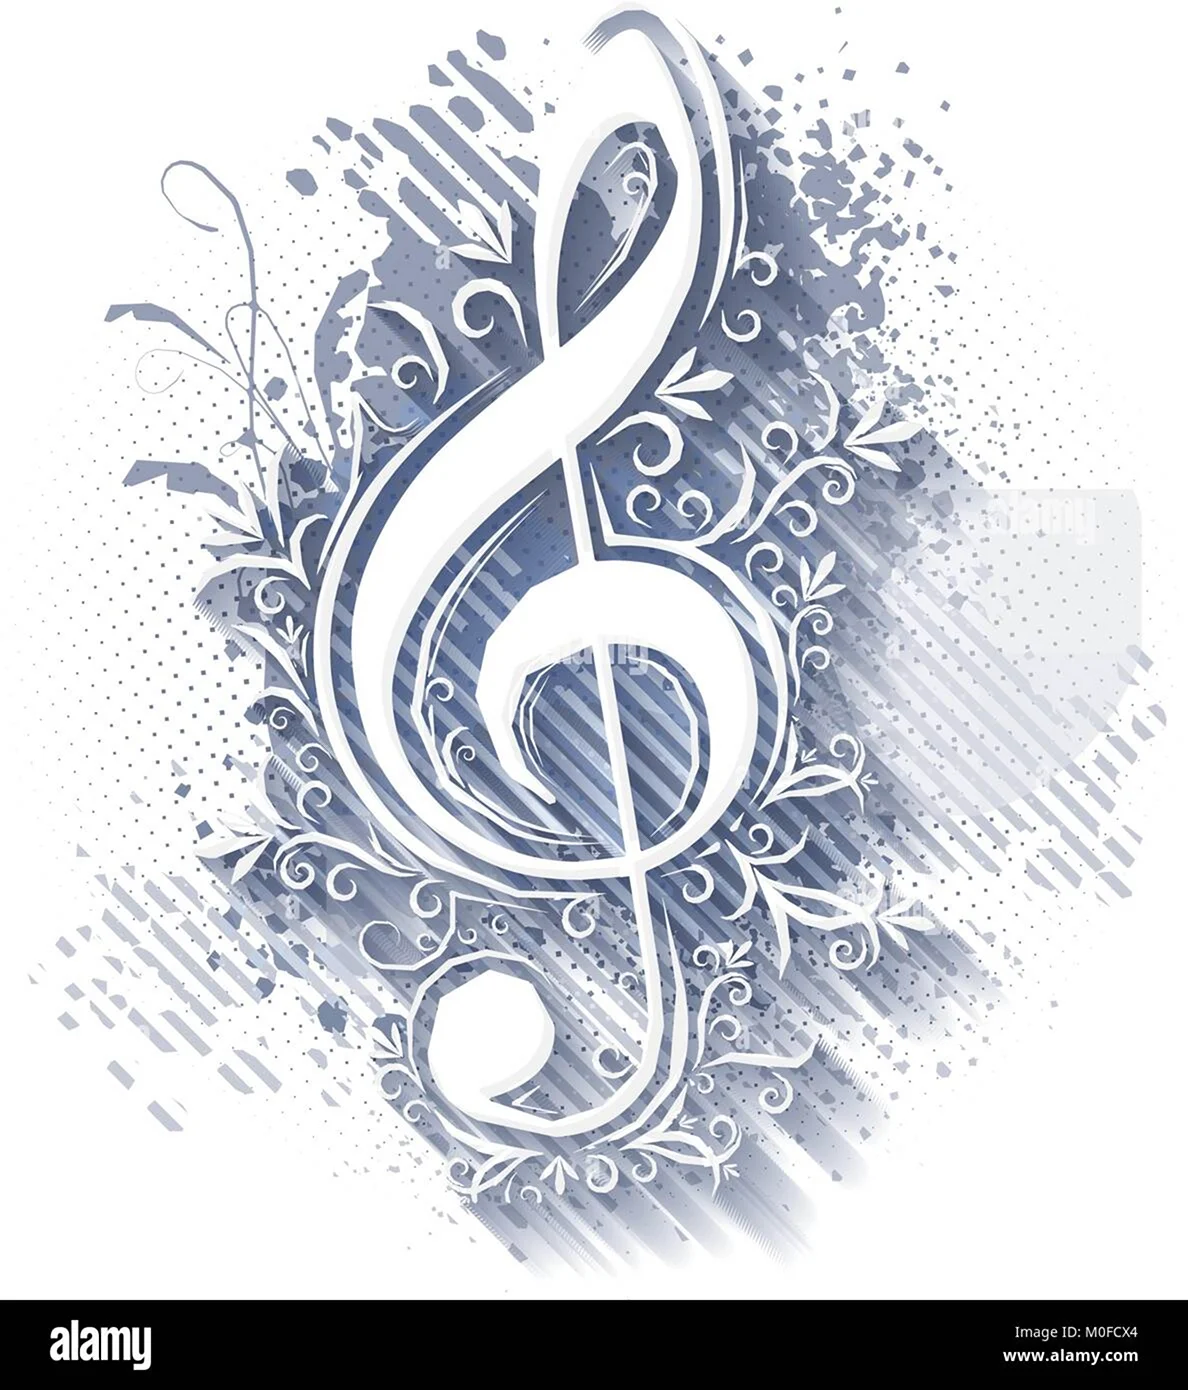 Логотип скрипичный ключ с орнаментом